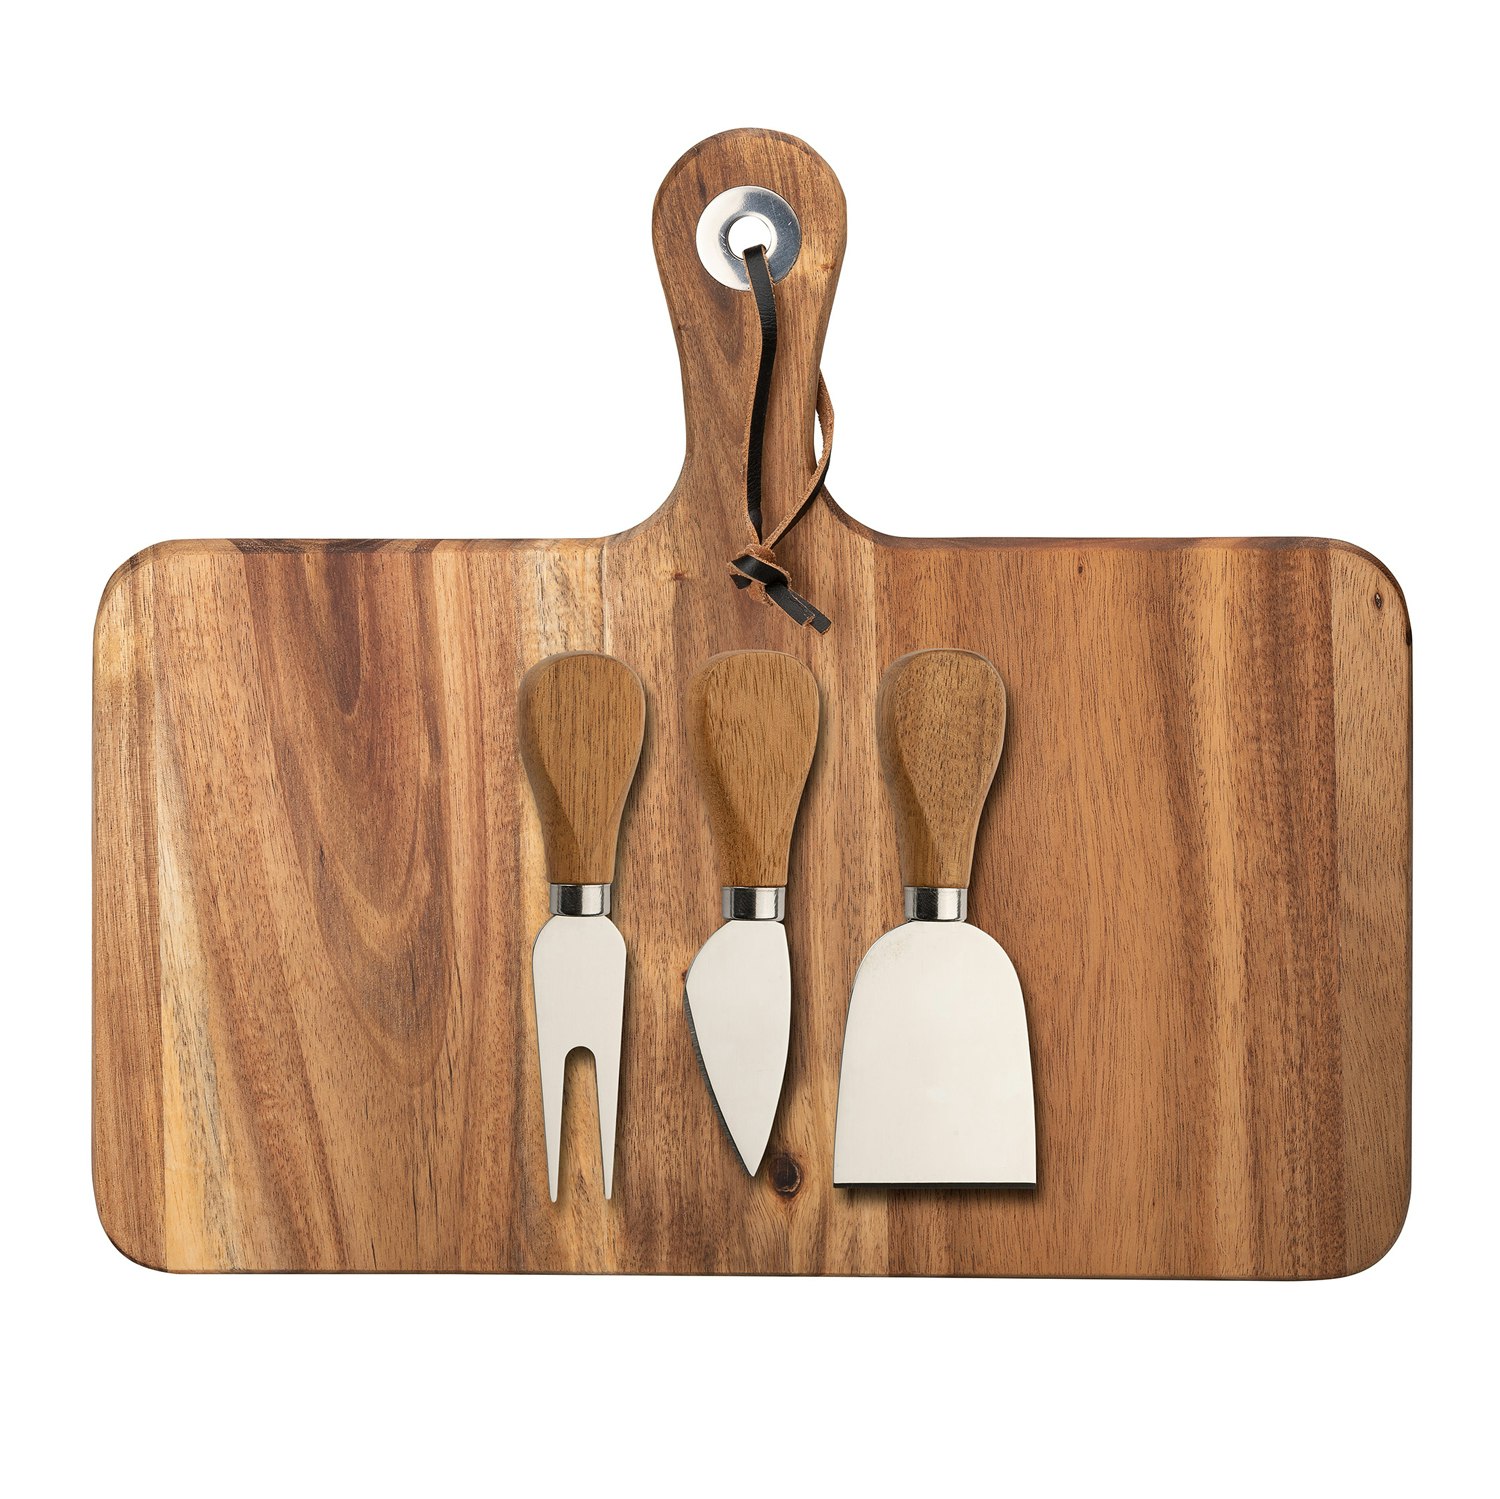 https://royaldesign.com/image/2/dorre-oline-cheese-tray-wood-0